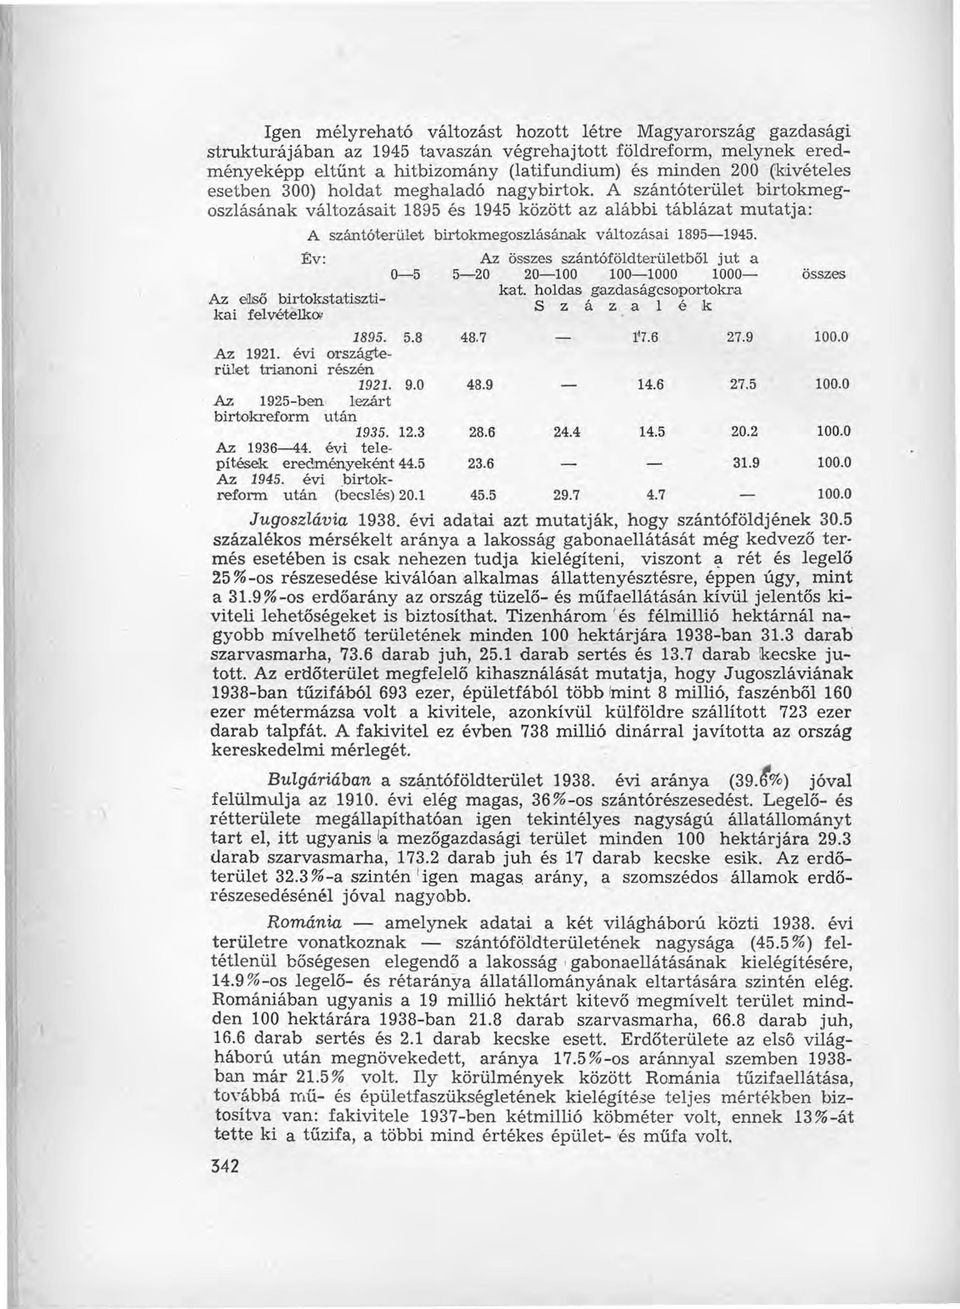 A szántóterület birtokmegoszlásának változásait 1895 és 1945 között az alábbi táblázat mutatja: A szántóterület birtokmegoszlásának változásai 1895-1945.